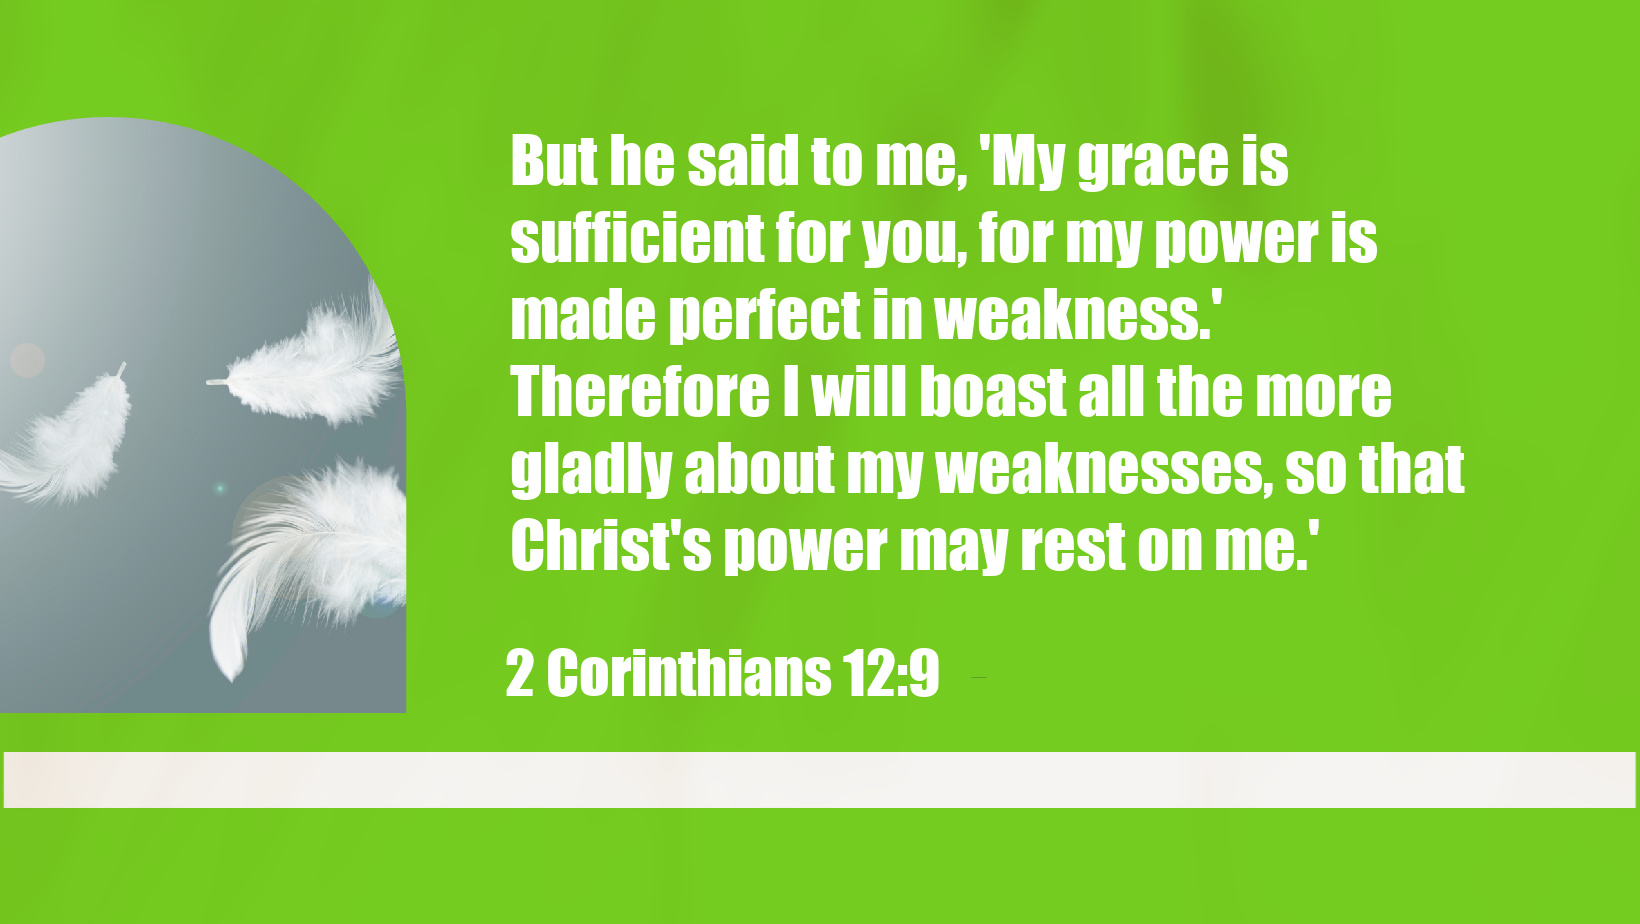 2 Corinthians 12:9 Bible verse about God's Grace